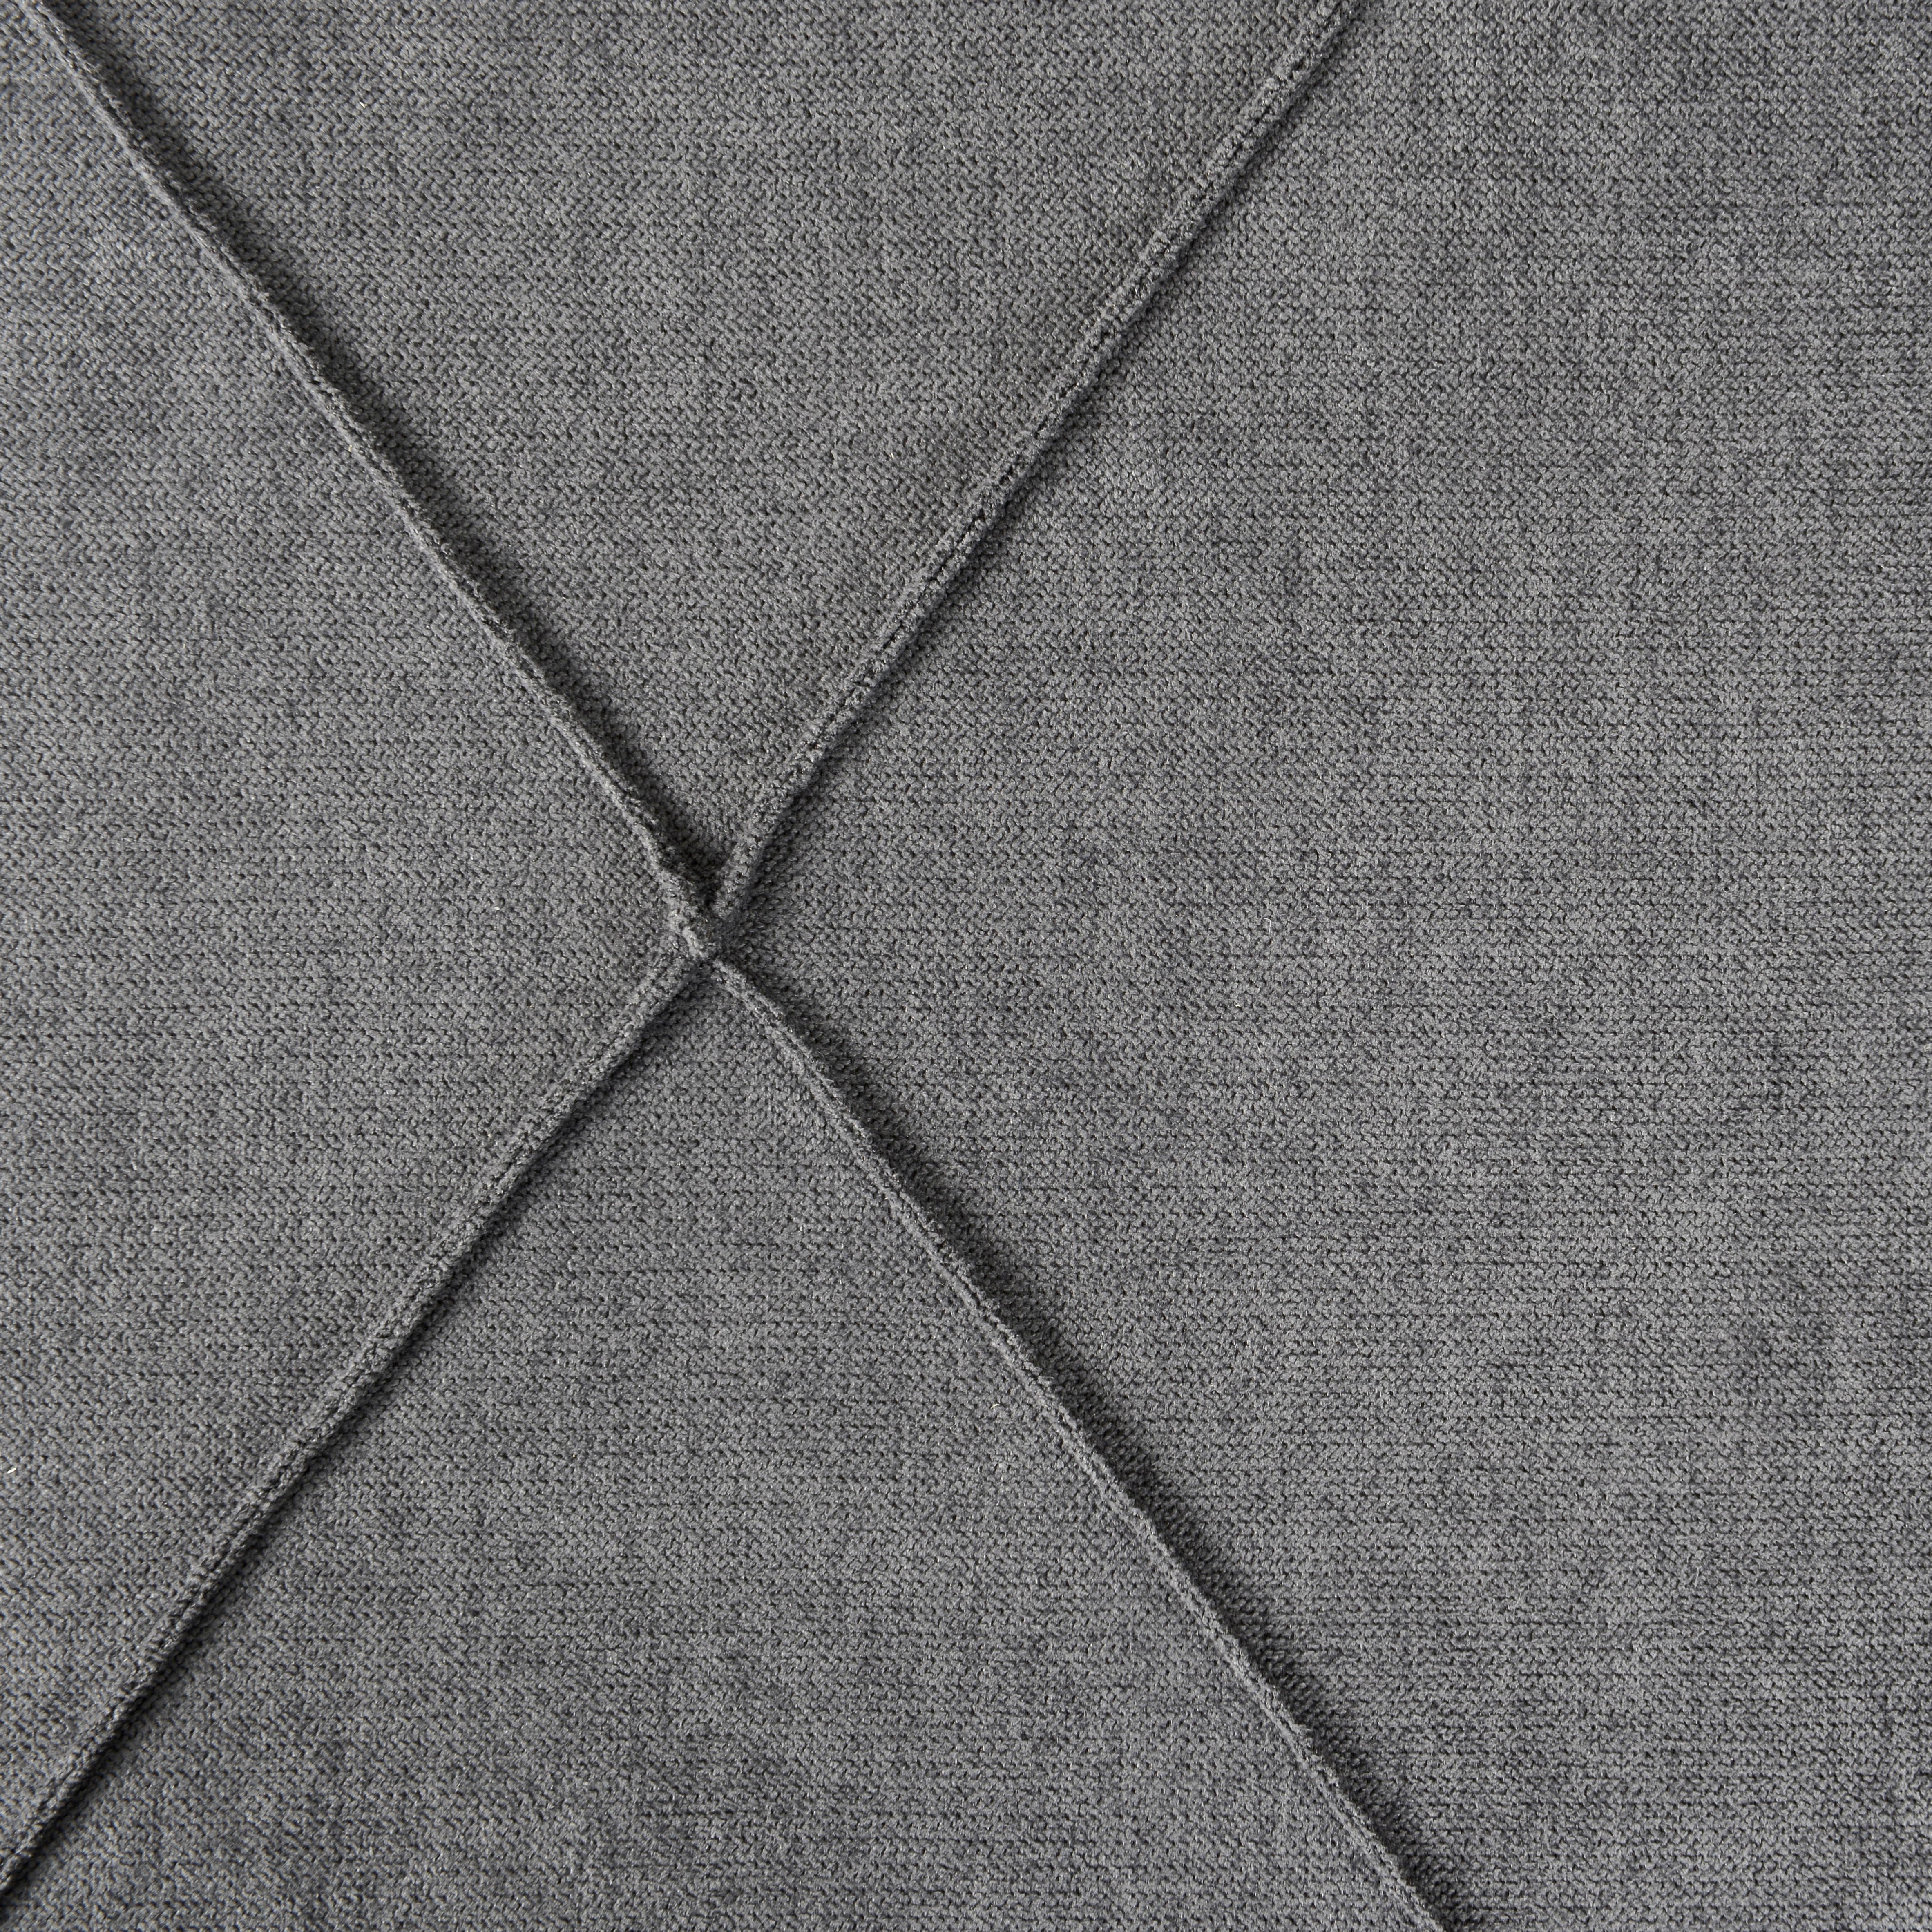 POSTEĽ BOXSPRING, 180/200 cm, drevo, textil, sivá - sivá/chrómová, Konventionell, kov/drevo (180/200cm) - Elegando